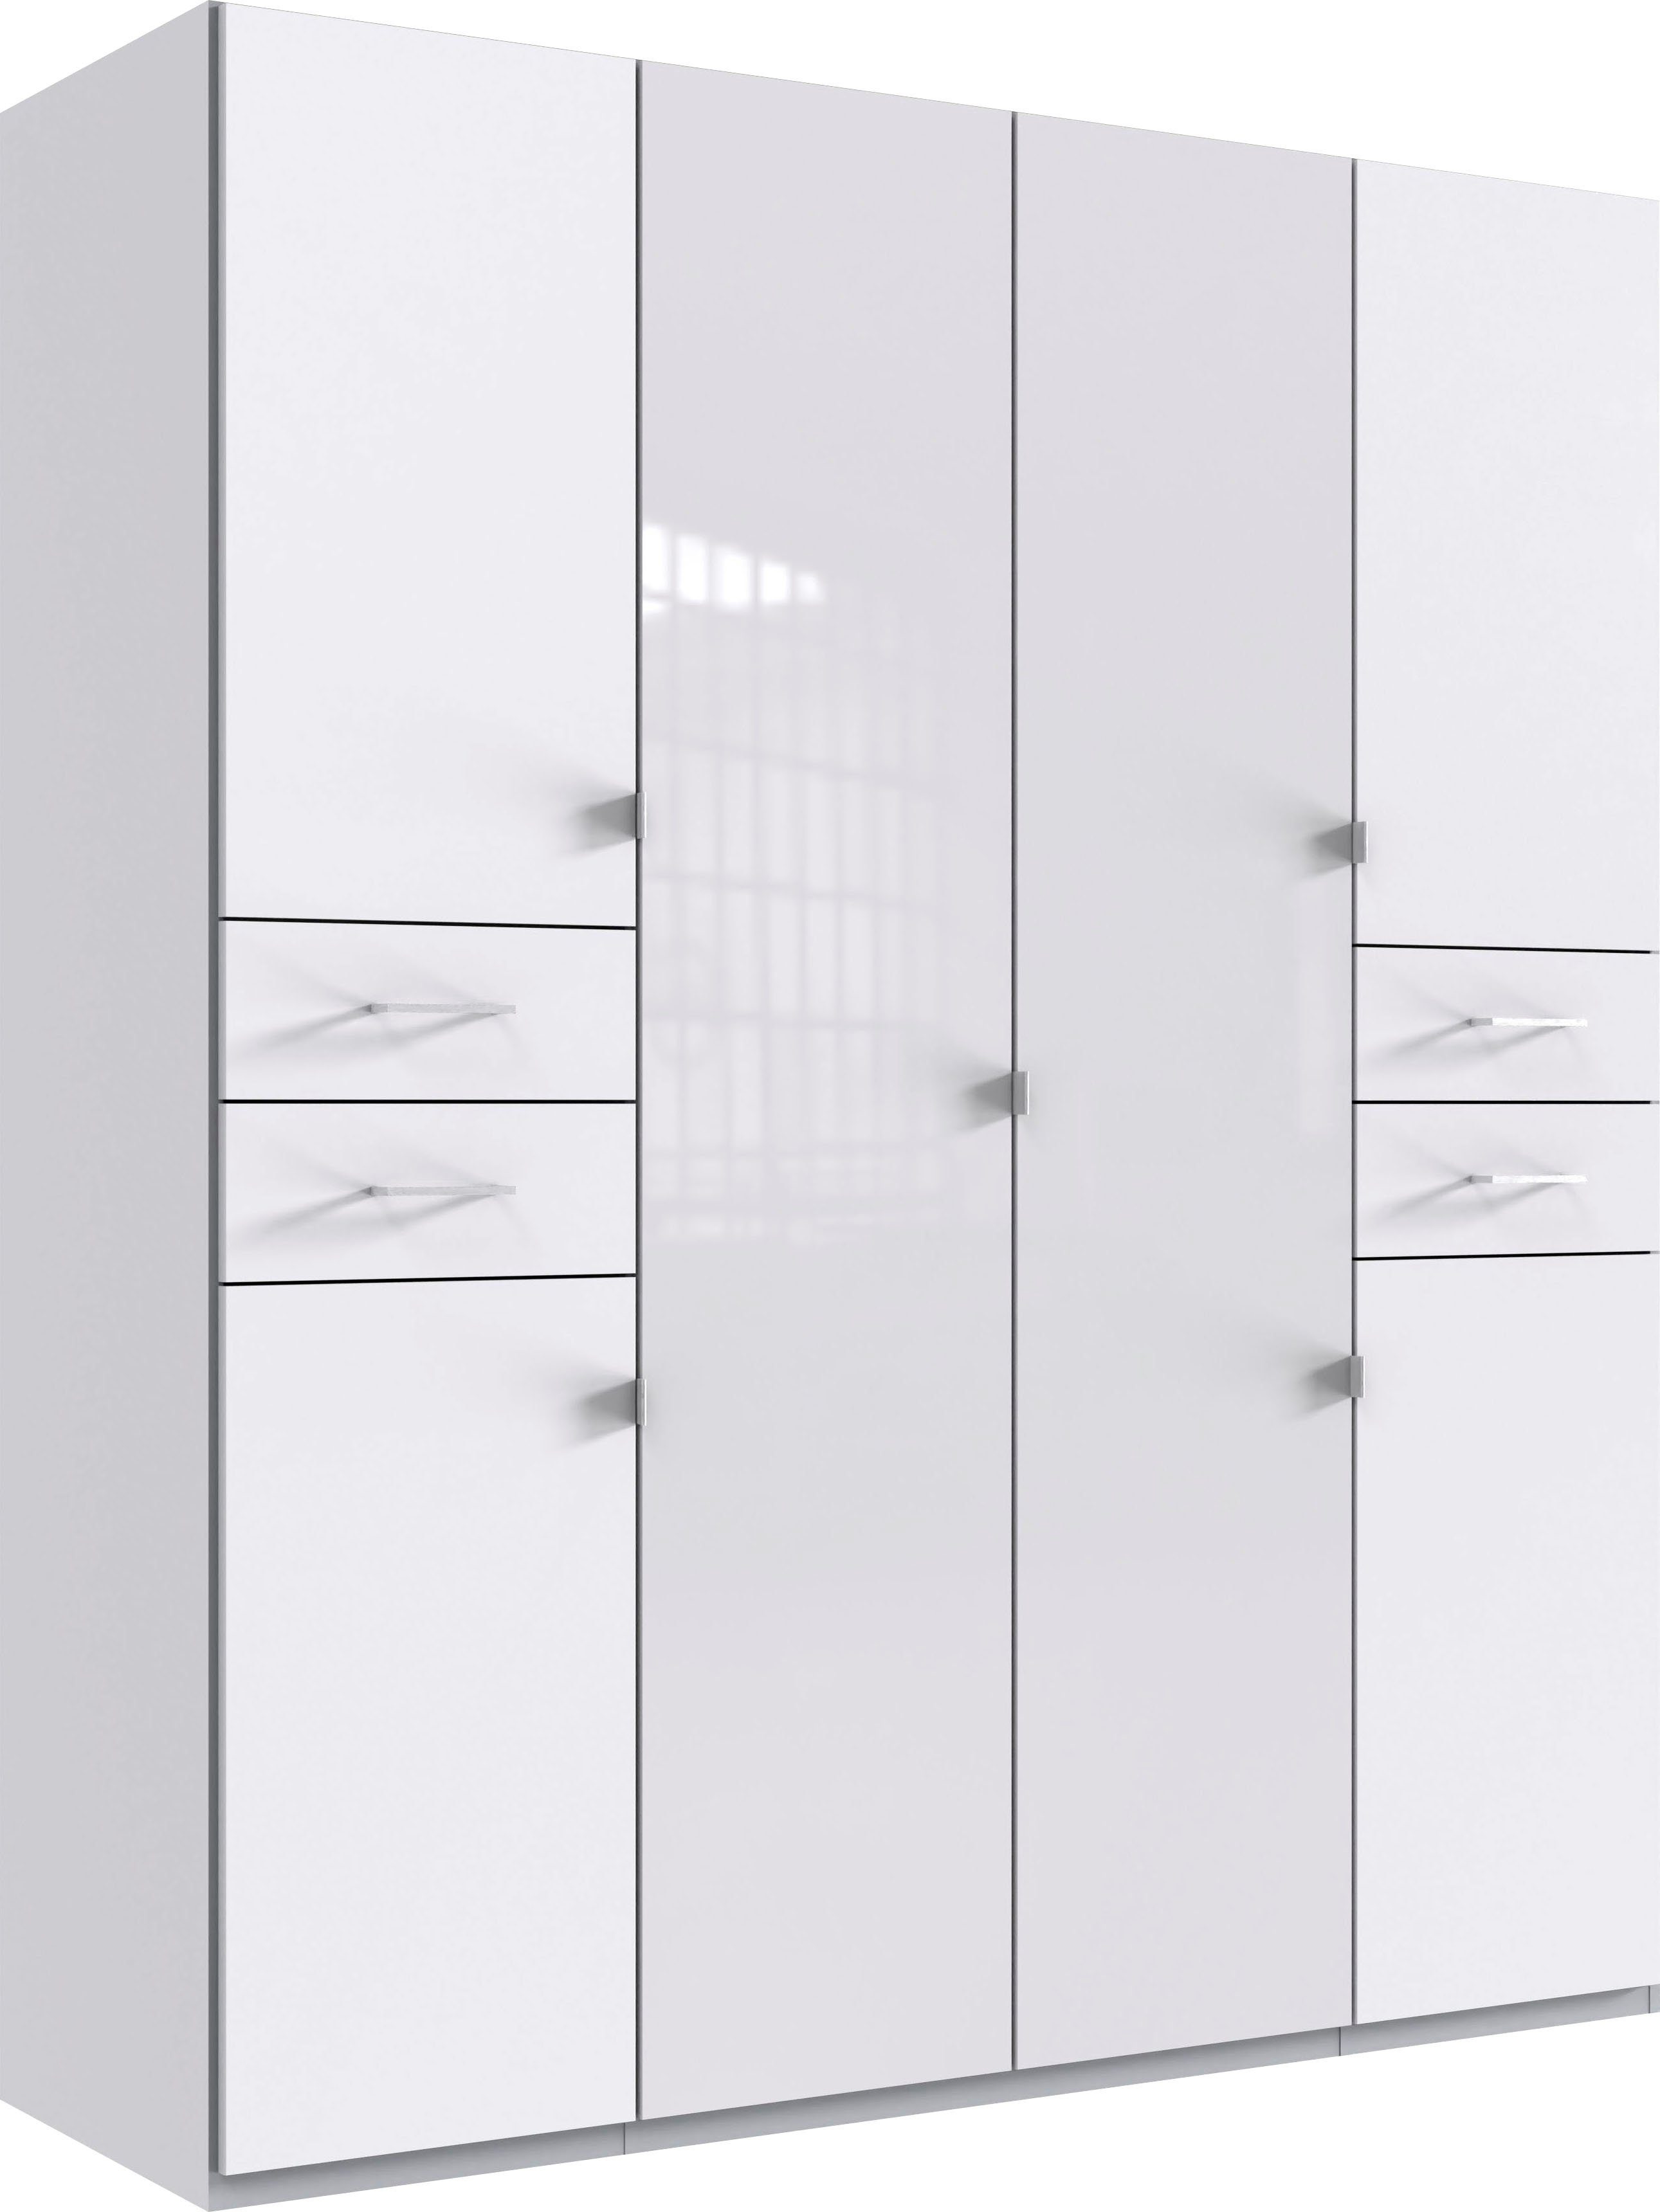 Wimex Drehtürenschrank Danzig mit Schubladen auf bequemer Höhe, mit Glastüren Weiß/ lange durchgängige Türfronten Glas weiß